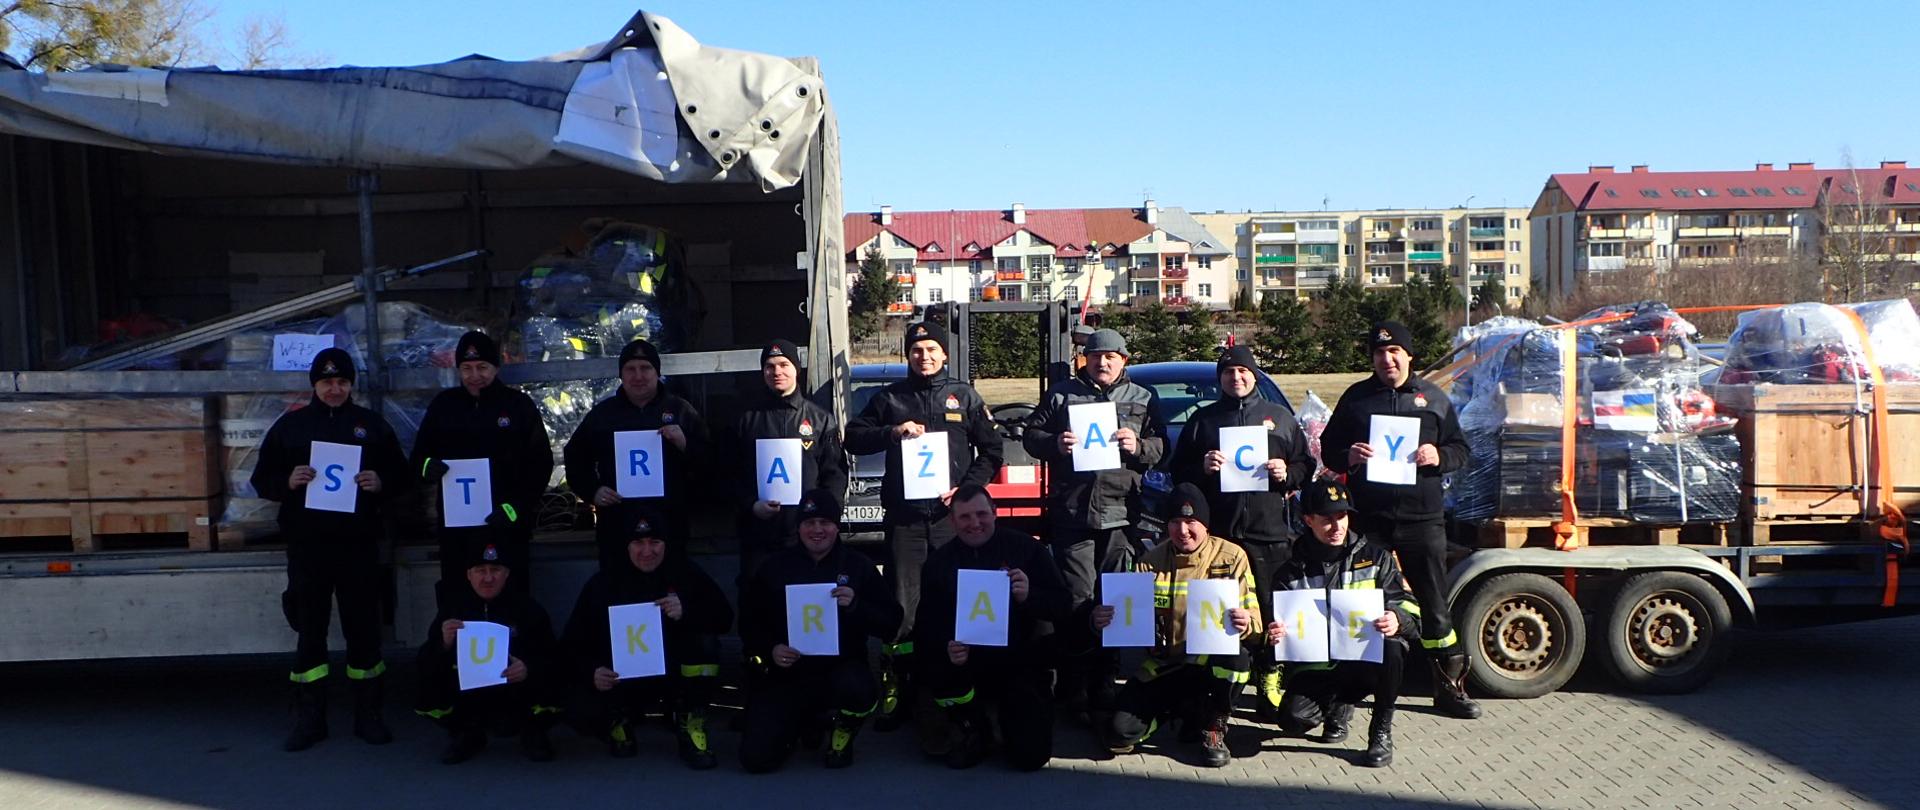 Grupa strażaków stoi z napisem "Strażacy Ukrainie". W tle załadowany na samochody sprzęt pożarniczy.